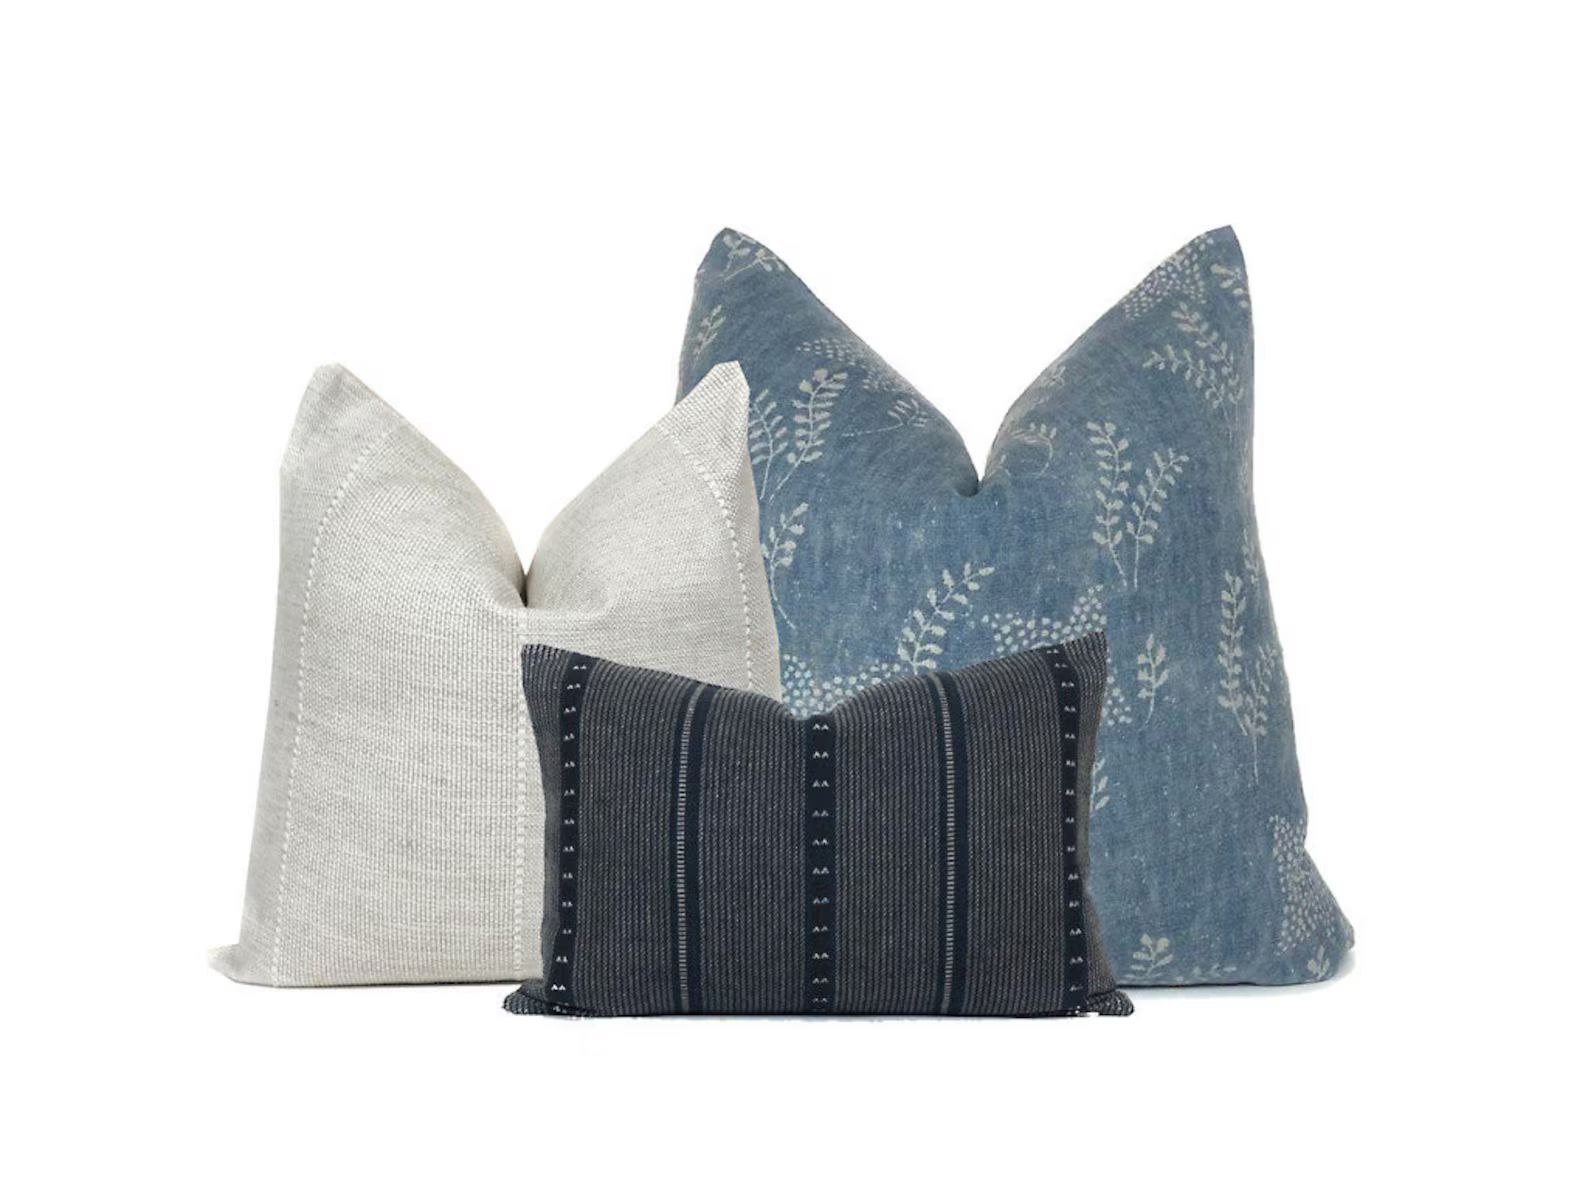 Sofa Pillow Combo # 25 | Blue and White Pillows | Contemporary Pillows | High End PIllows | Desig... | Etsy (US)